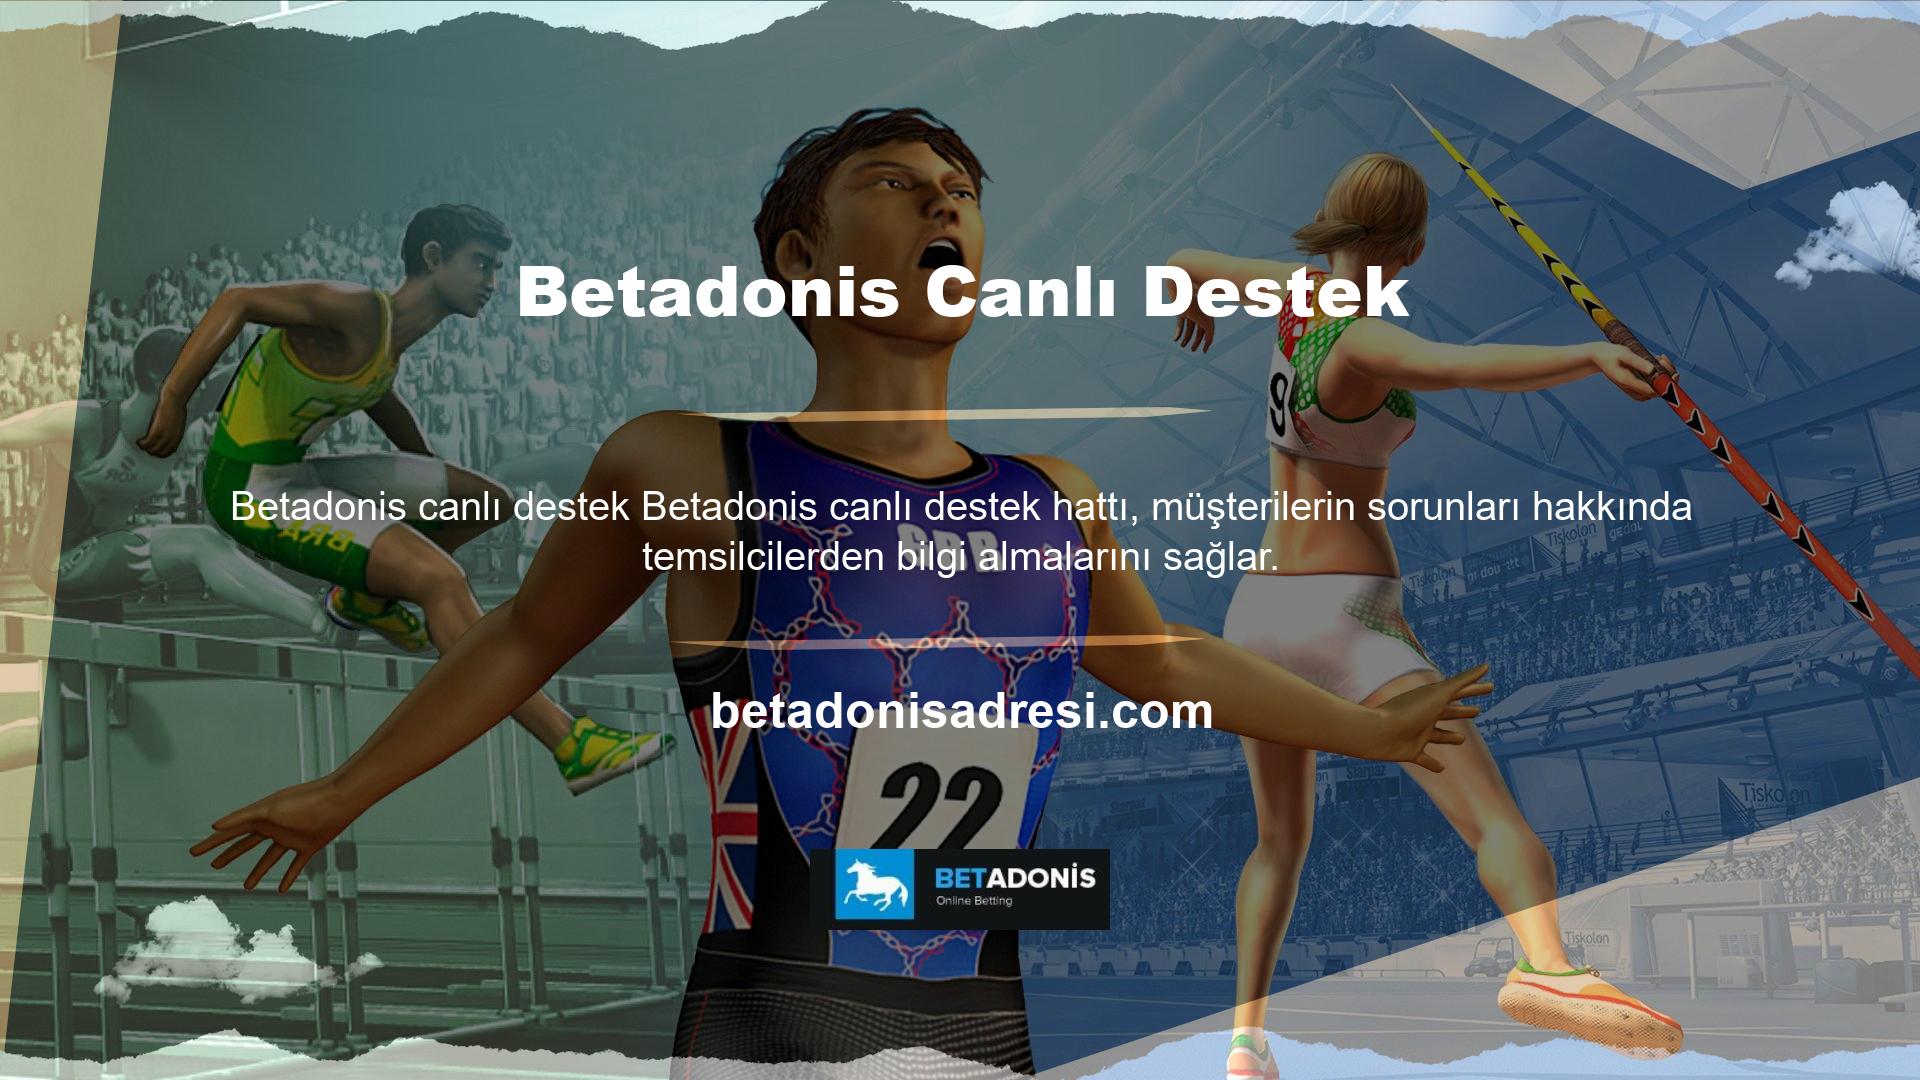 Betadonis bahis platformunun üyeleri, çok çeşitli oyun içeriği ve aktiviteleri sunmaktadır